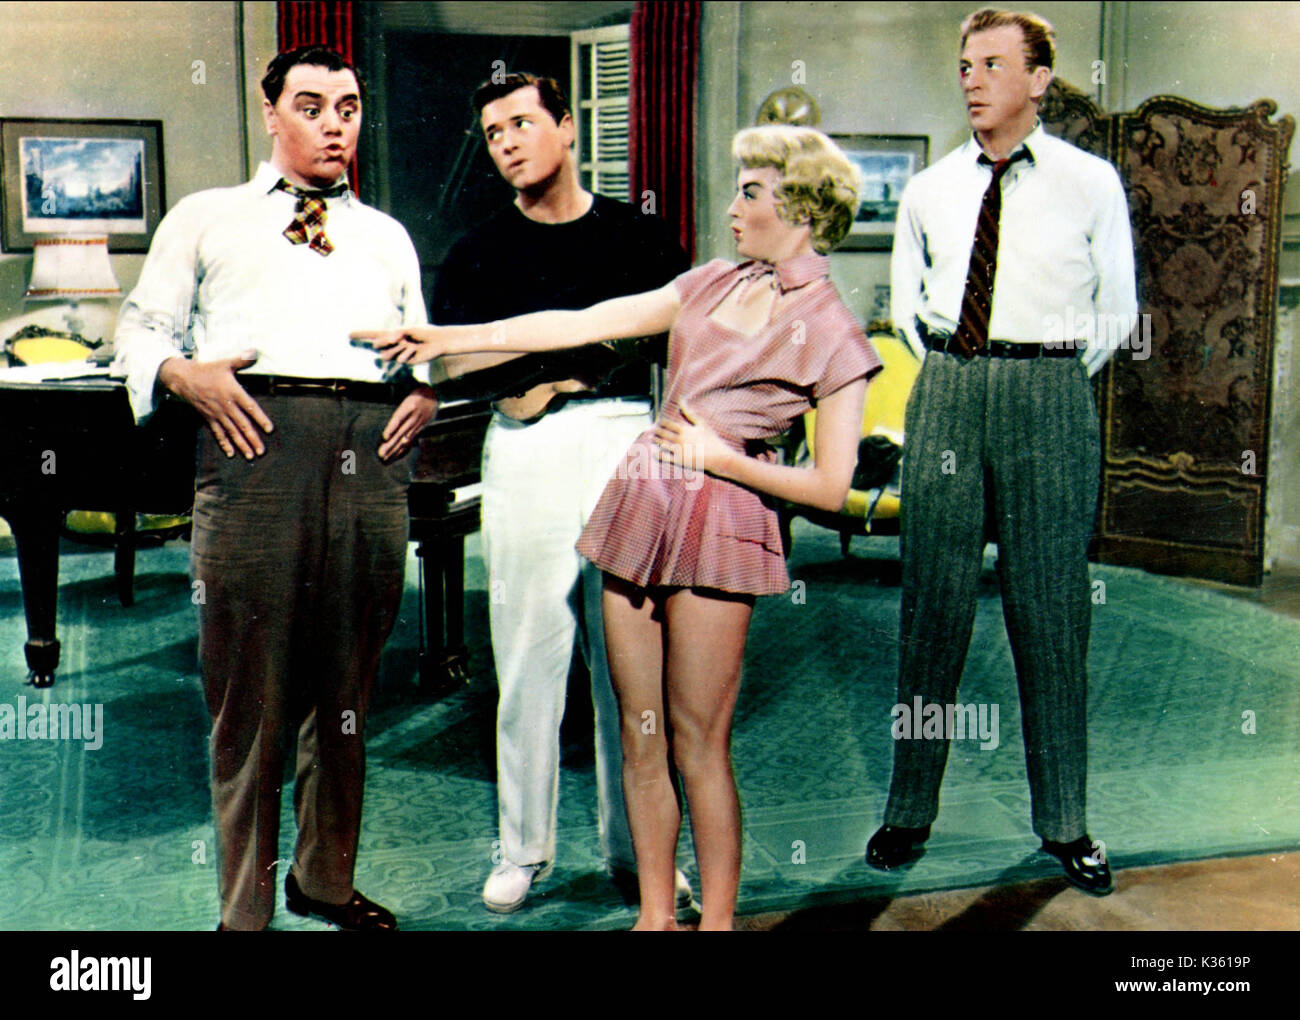 Le cose migliori della vita sono gratis Ernest Borgnine, GORDON MAC RAE, SHEREE NORTH, DAN DAILEY data: 1956 Foto Stock